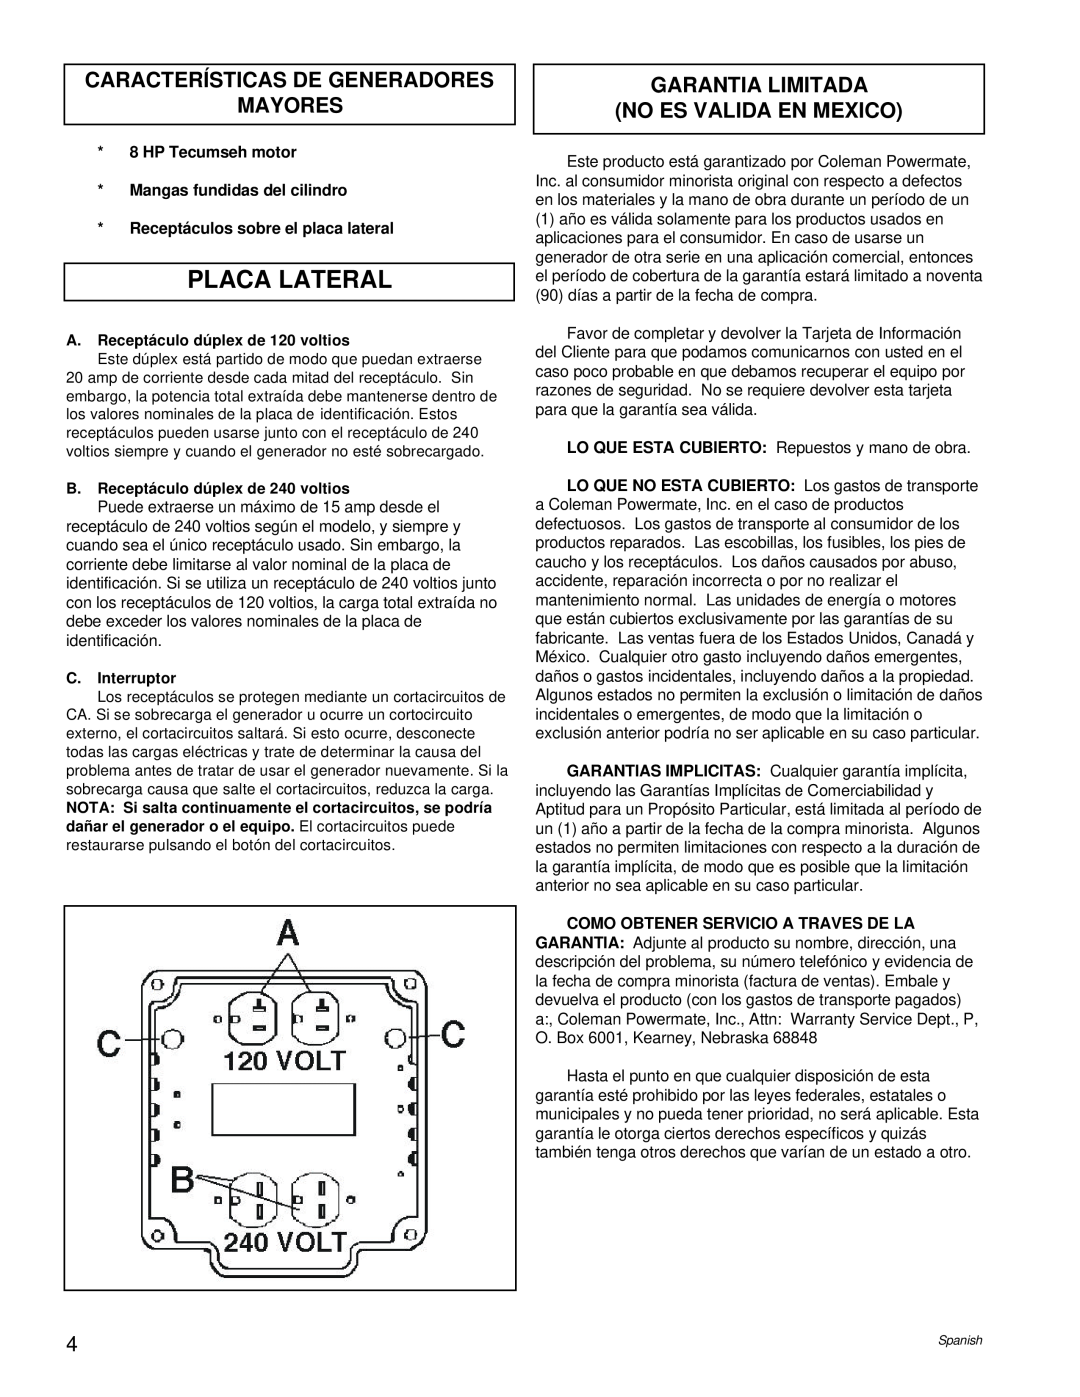 Powermate PM0524000 manual Placa Lateral, Características De Generadores Mayores, Garantia Limitada No Es Valida En Mexico 